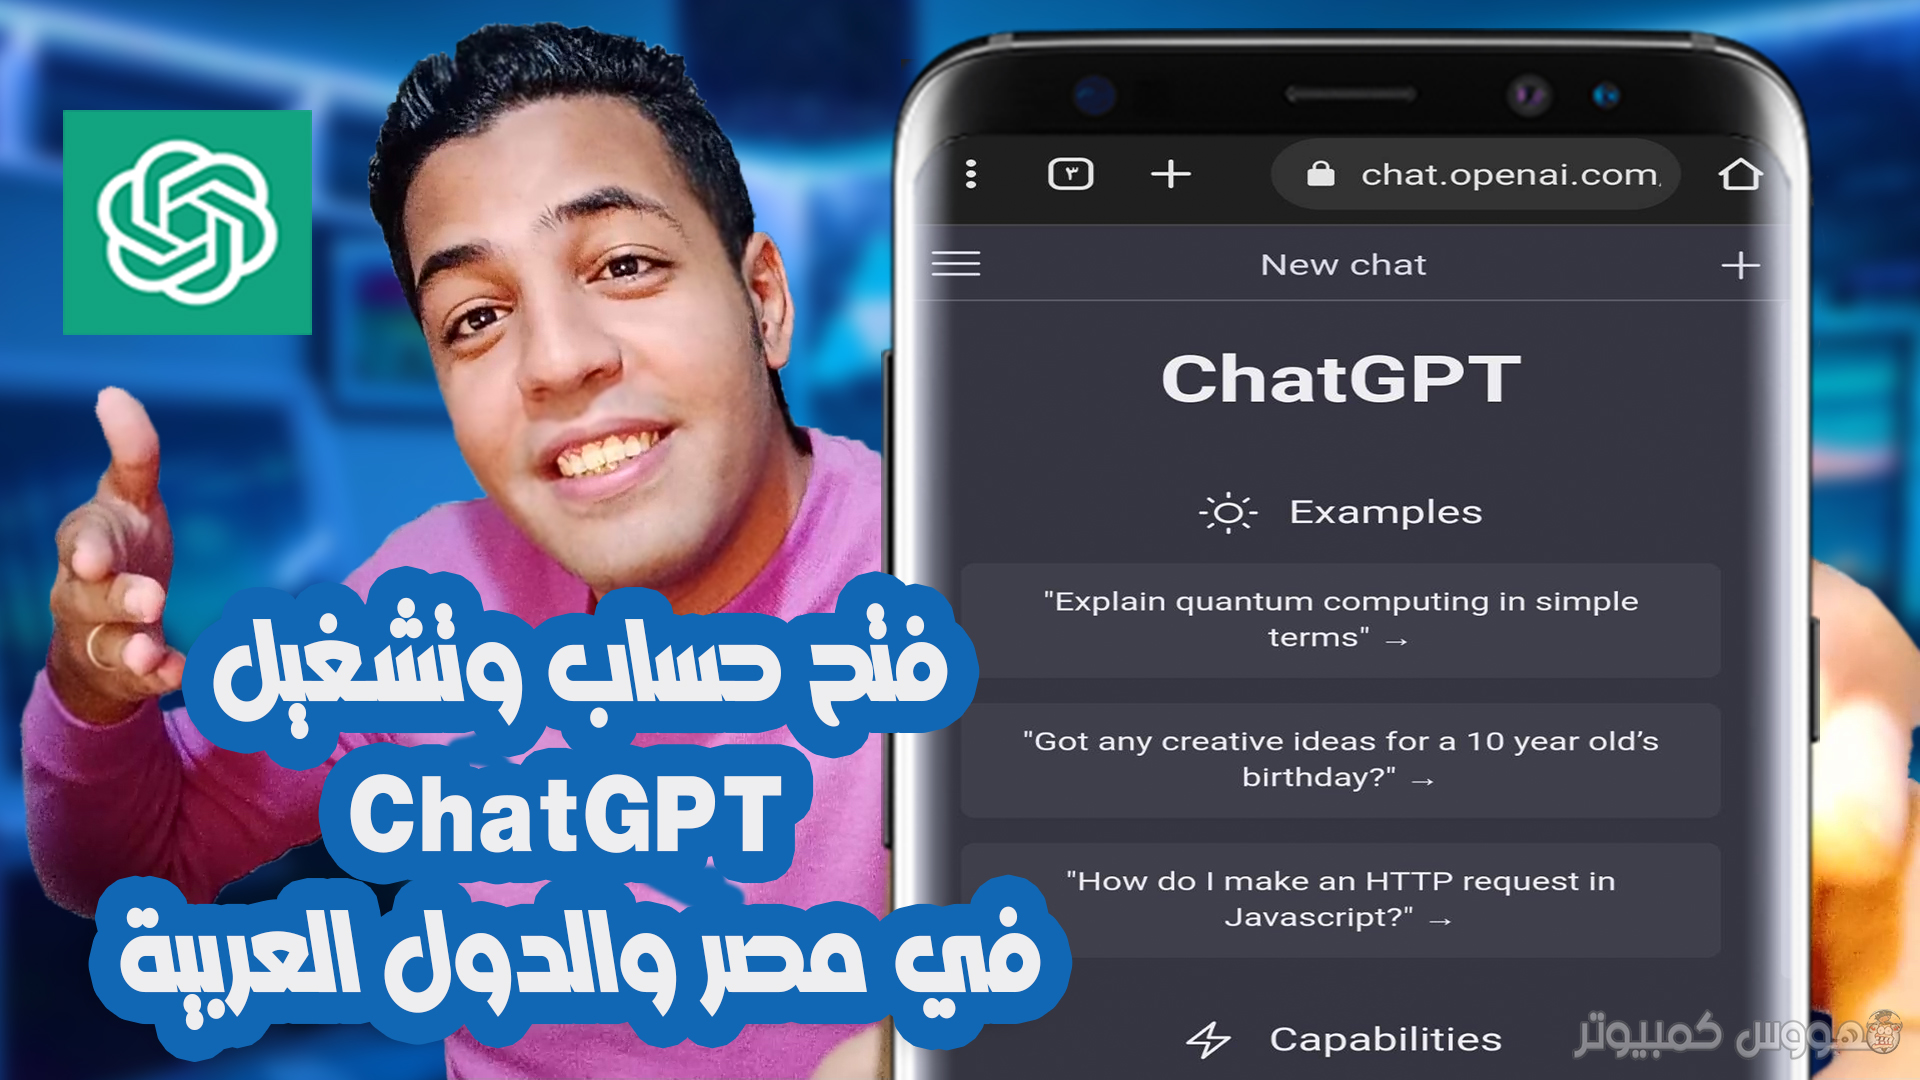 طريقة فتح حساب وتشغيل  ChatGPT في مصر و الدول العربية المحظورة باستخدام الهاتف